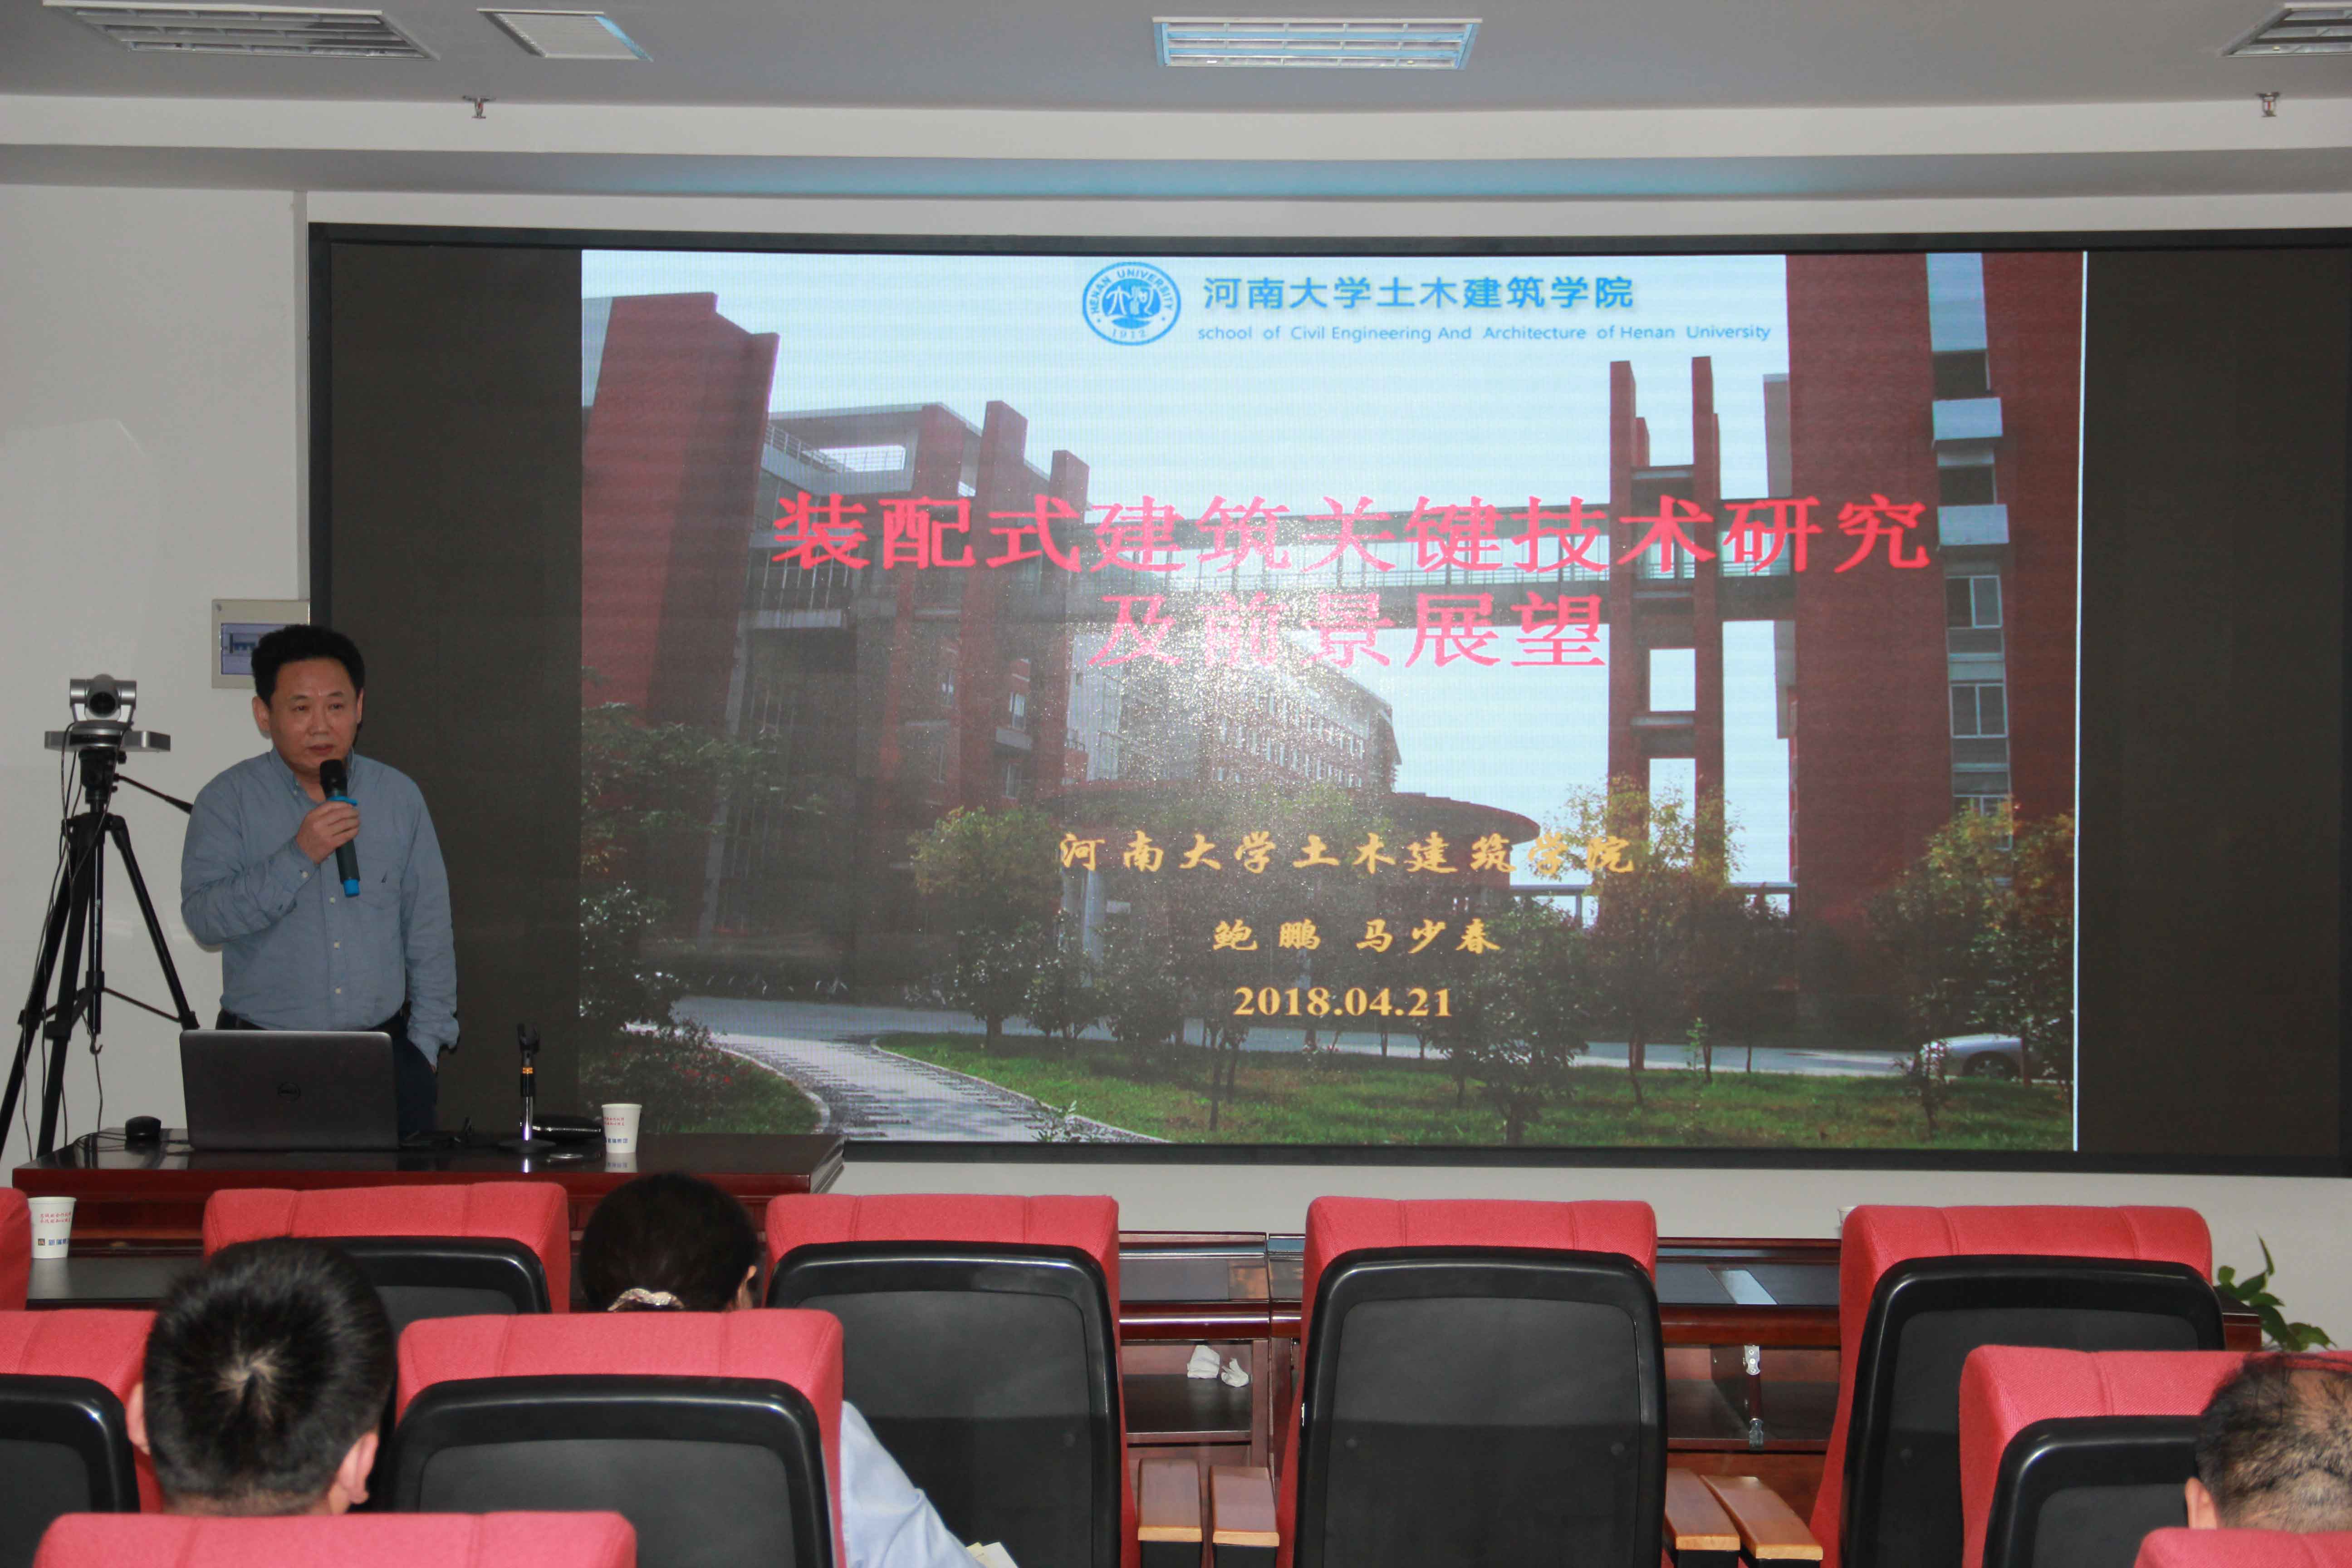 新蒲集团邀请河南大学专家教授莅临举办专题讲座